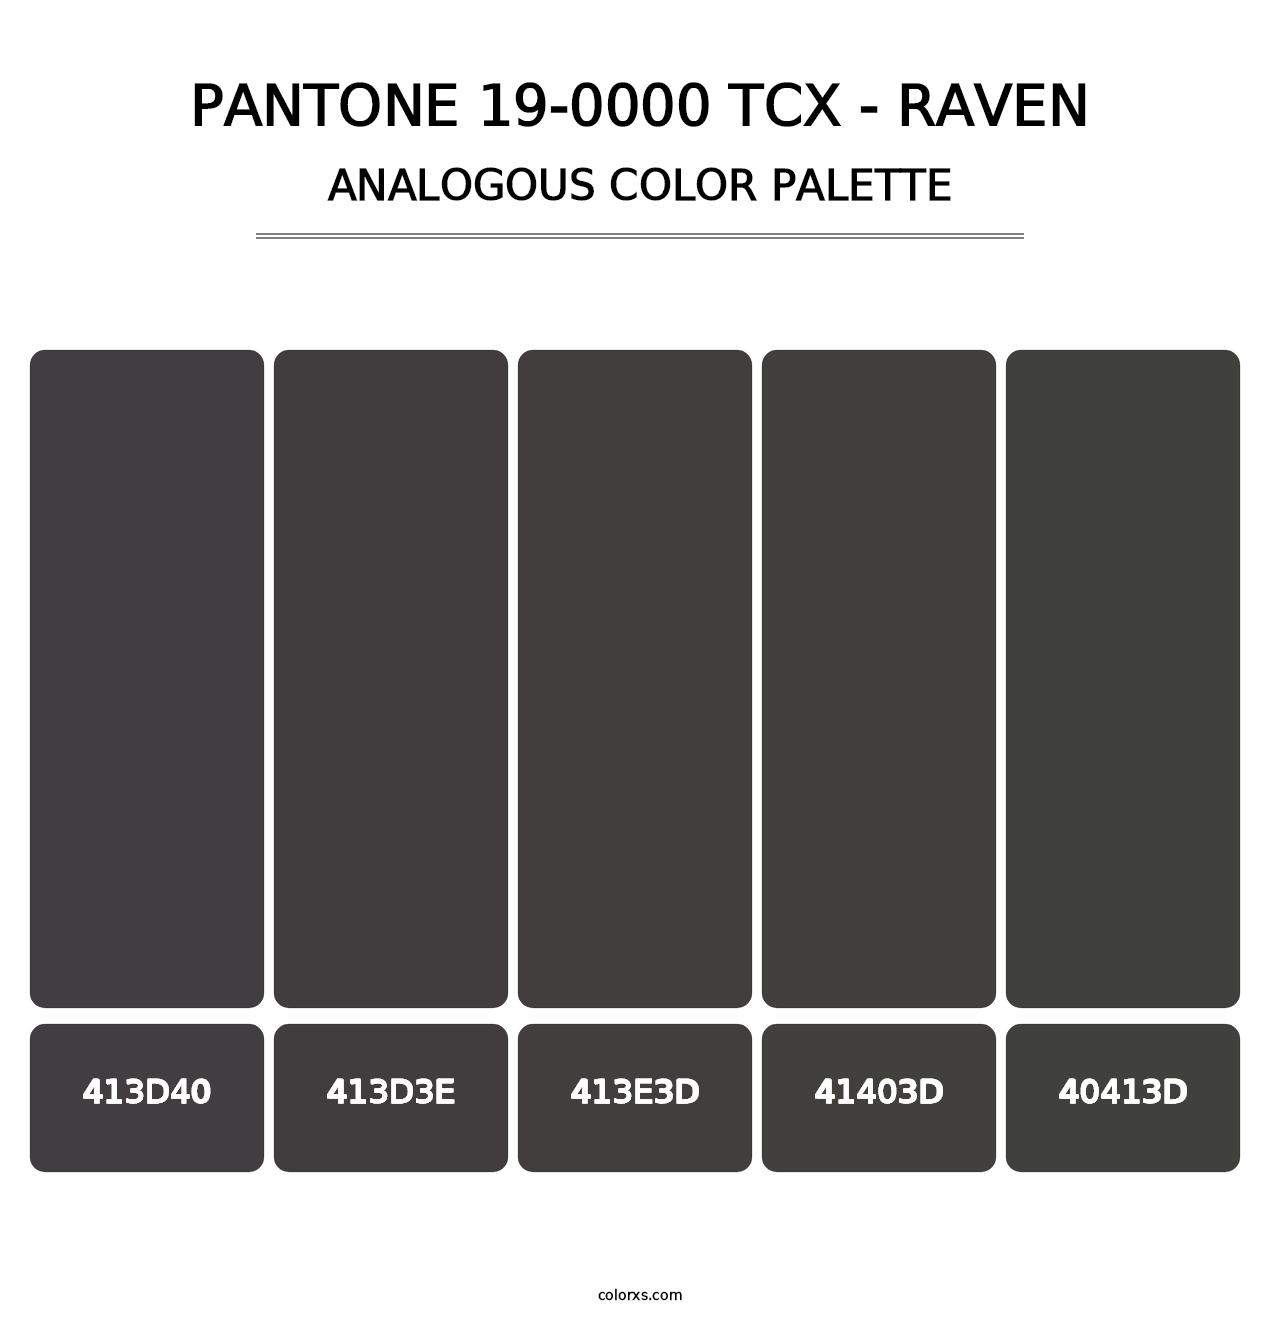 PANTONE 19-0000 TCX - Raven - Analogous Color Palette